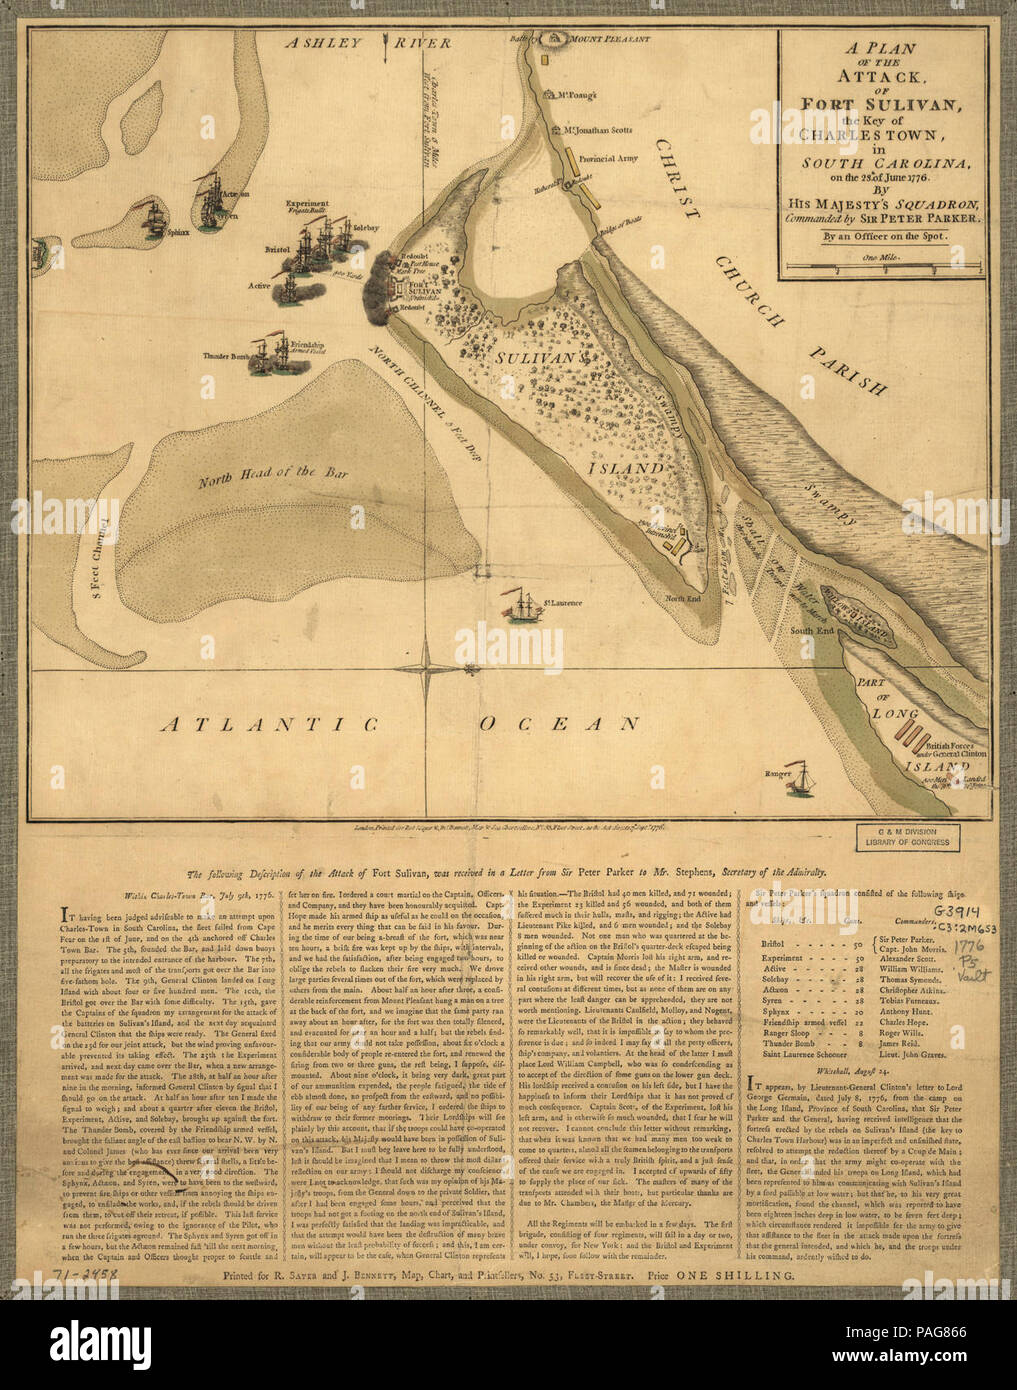 Einen Plan des Angriffs von Fort Sulivan, den Schlüssel der Charlestown, in Südcarolina, am 28. Juni 1776. Von squadron Seiner Majestät, kommandiert von Sir Peter Parker. Durch ein Offizier auf der Stelle. Stockfoto